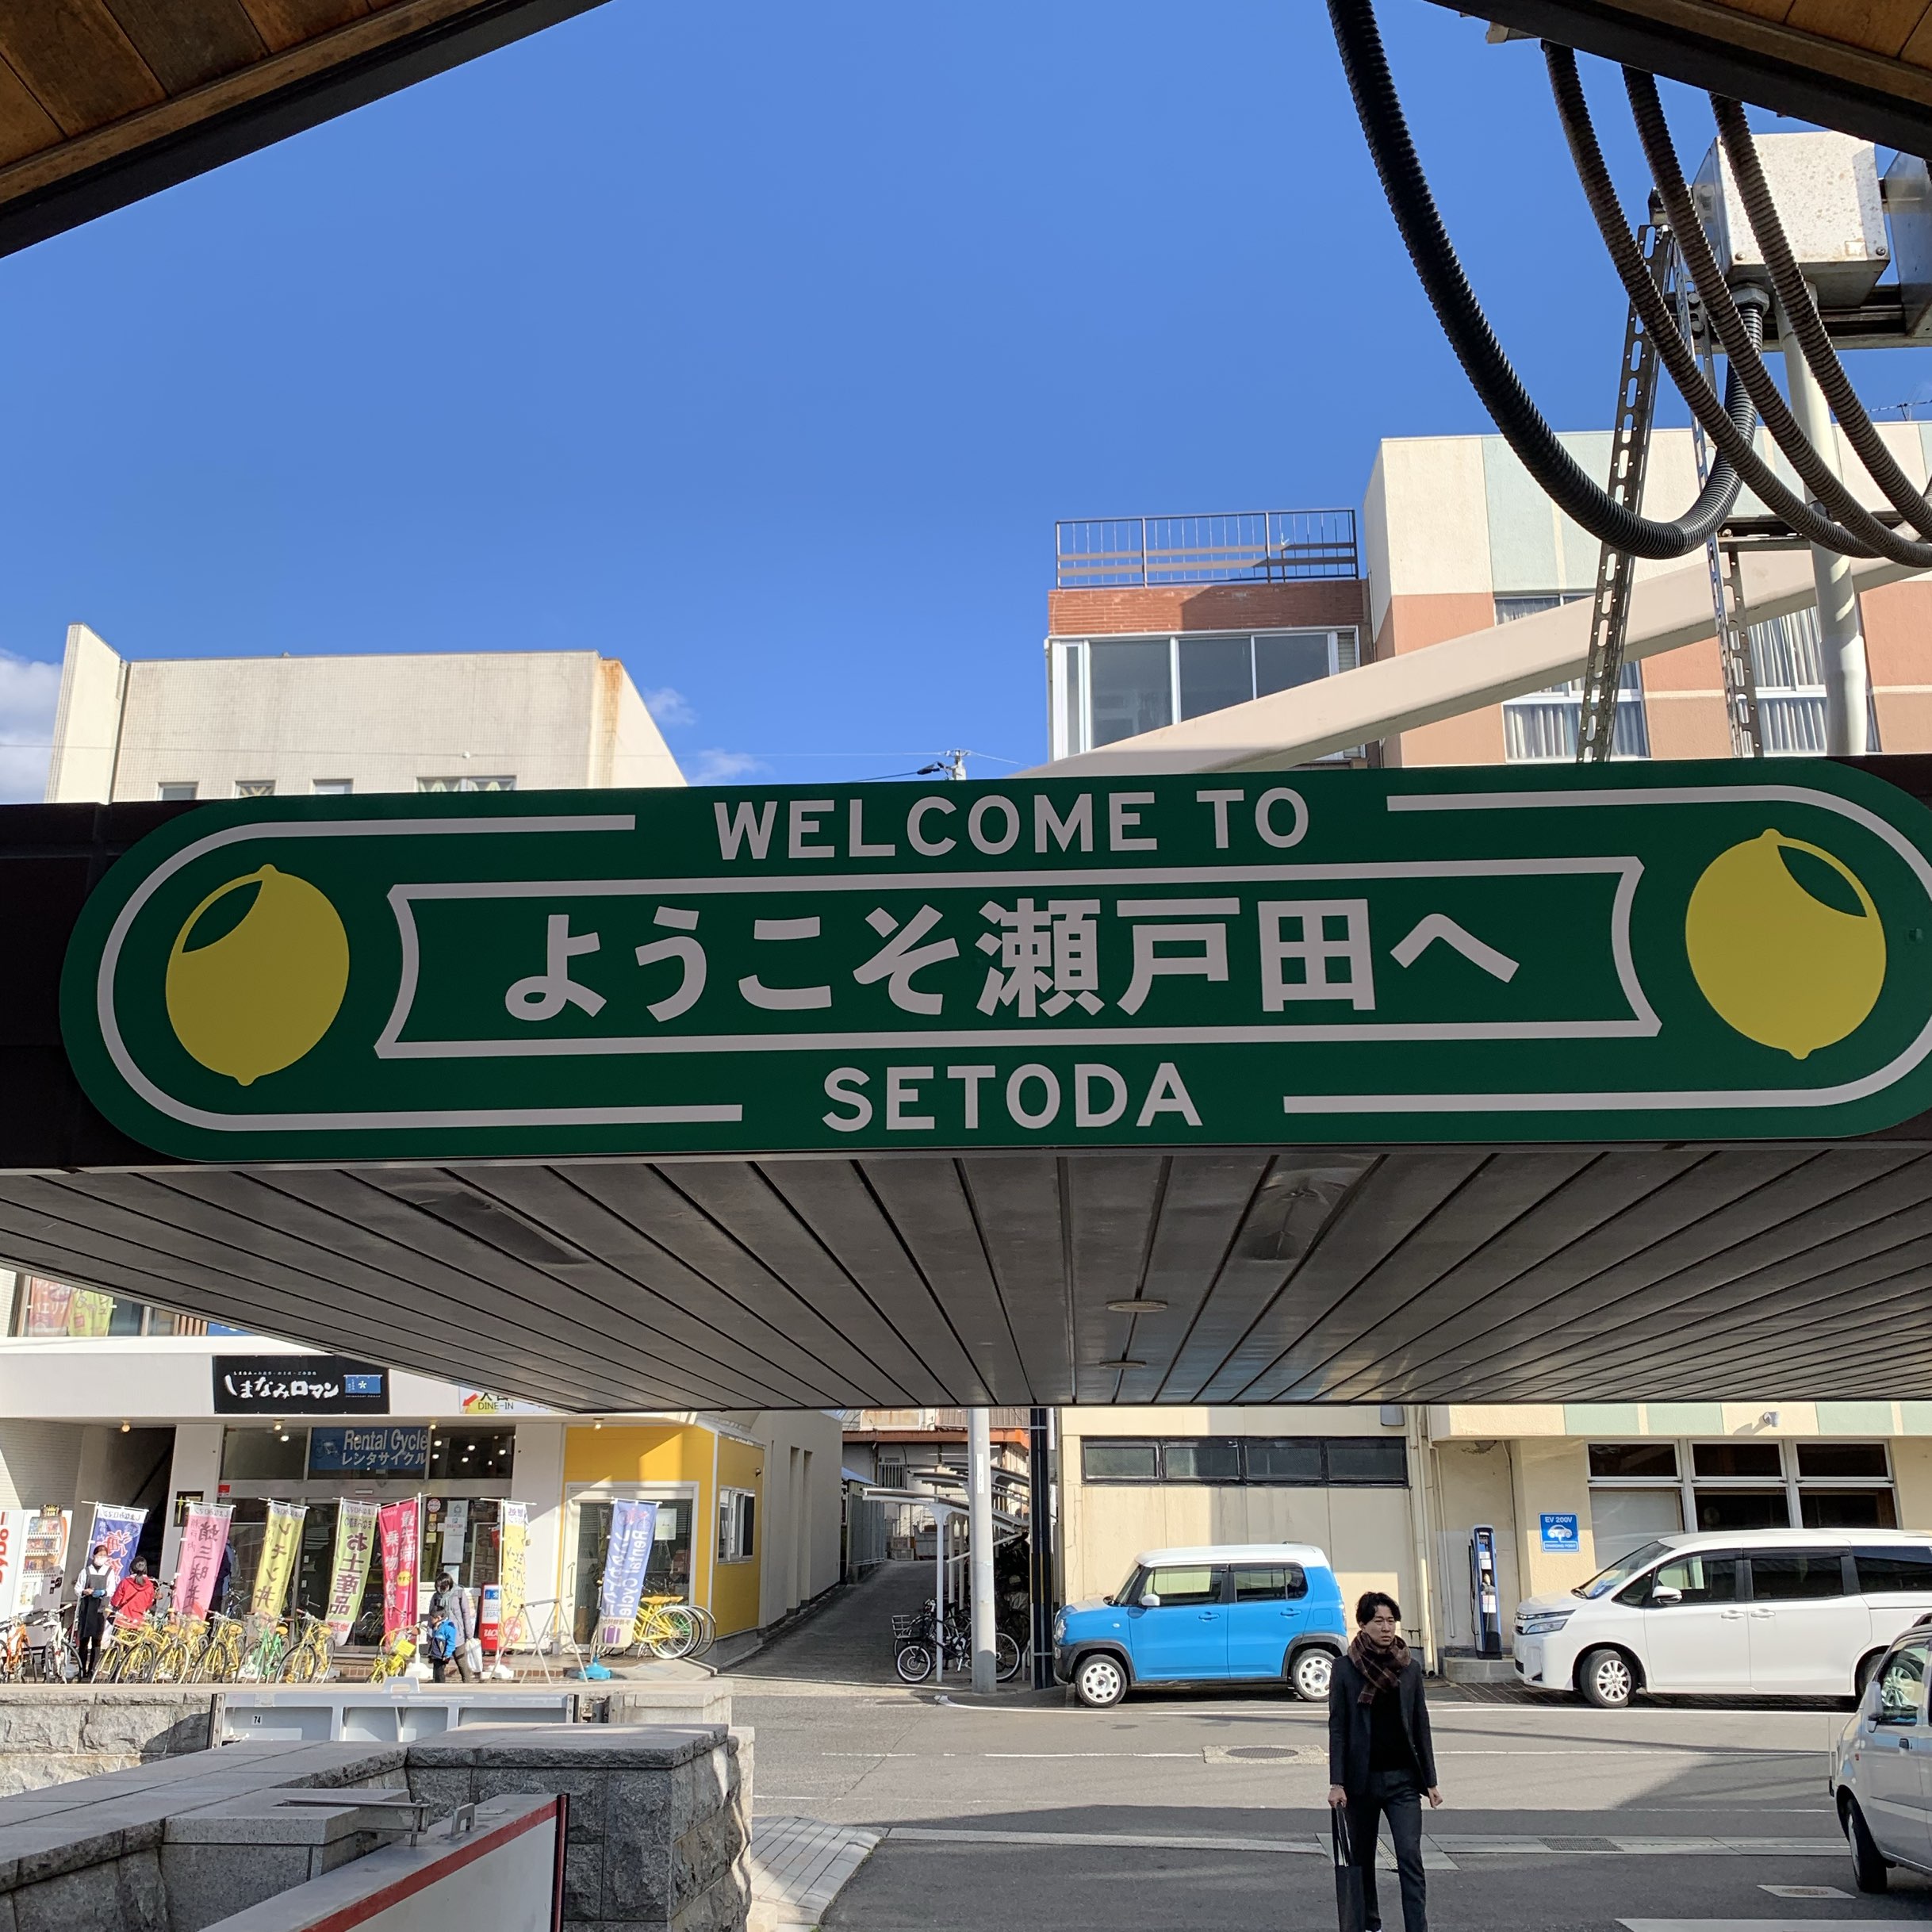 户田 盐町商店街